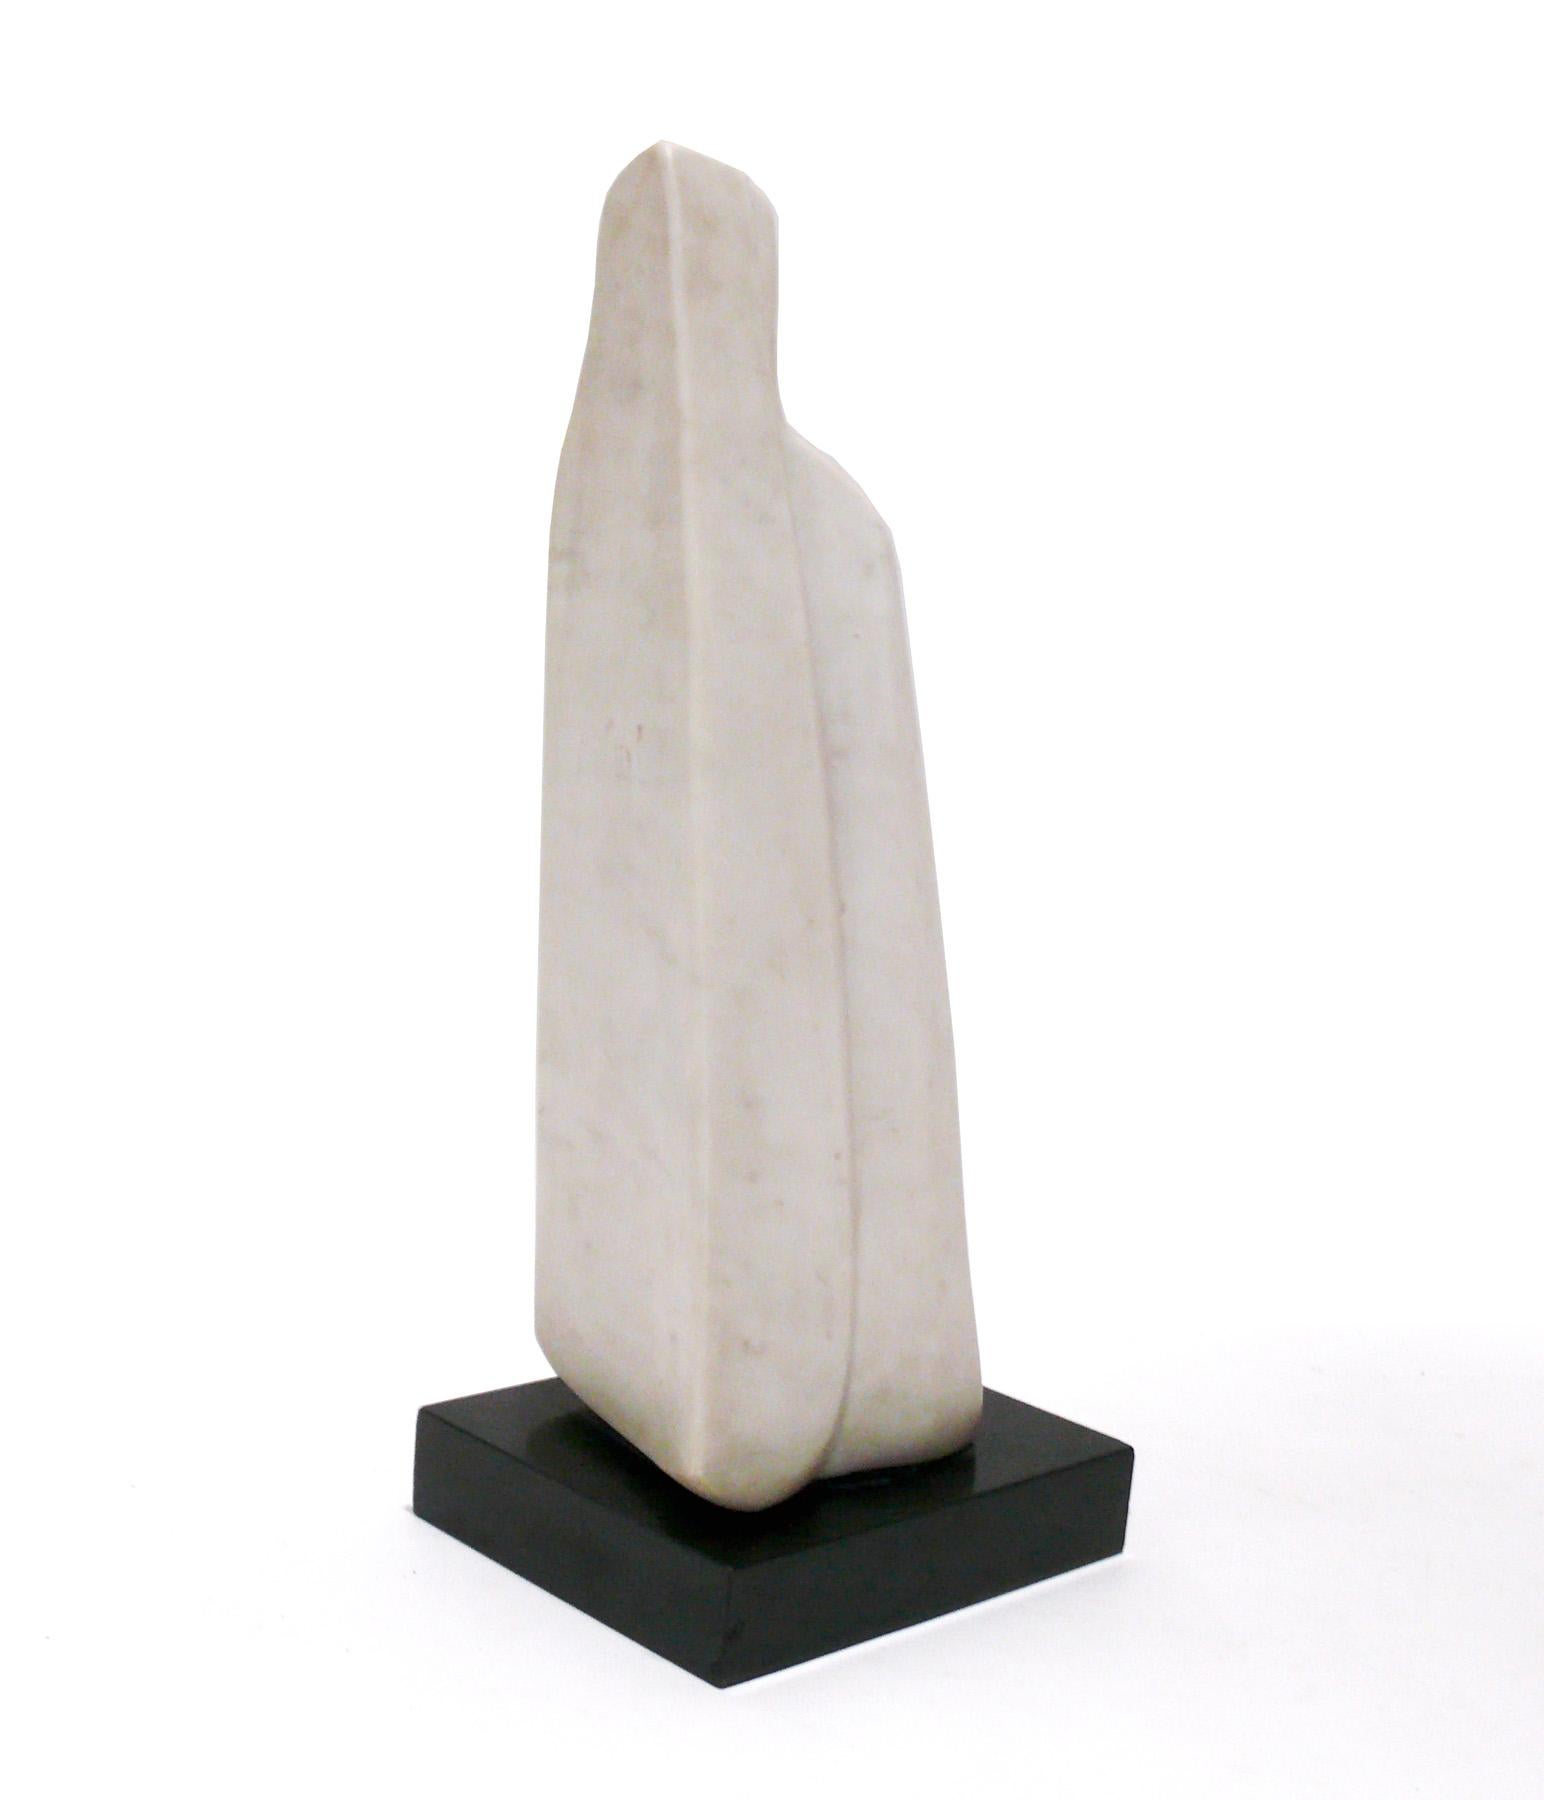 Sculpture moderniste en marbre blanc, réalisée à la main par Michel Elia, français, vers les années 1970. Il mesure une hauteur impressionnante de 18.75 pouces. La sculpture d'Elia a été comparée à celle de Jean Arp. Les œuvres d'Elia sont